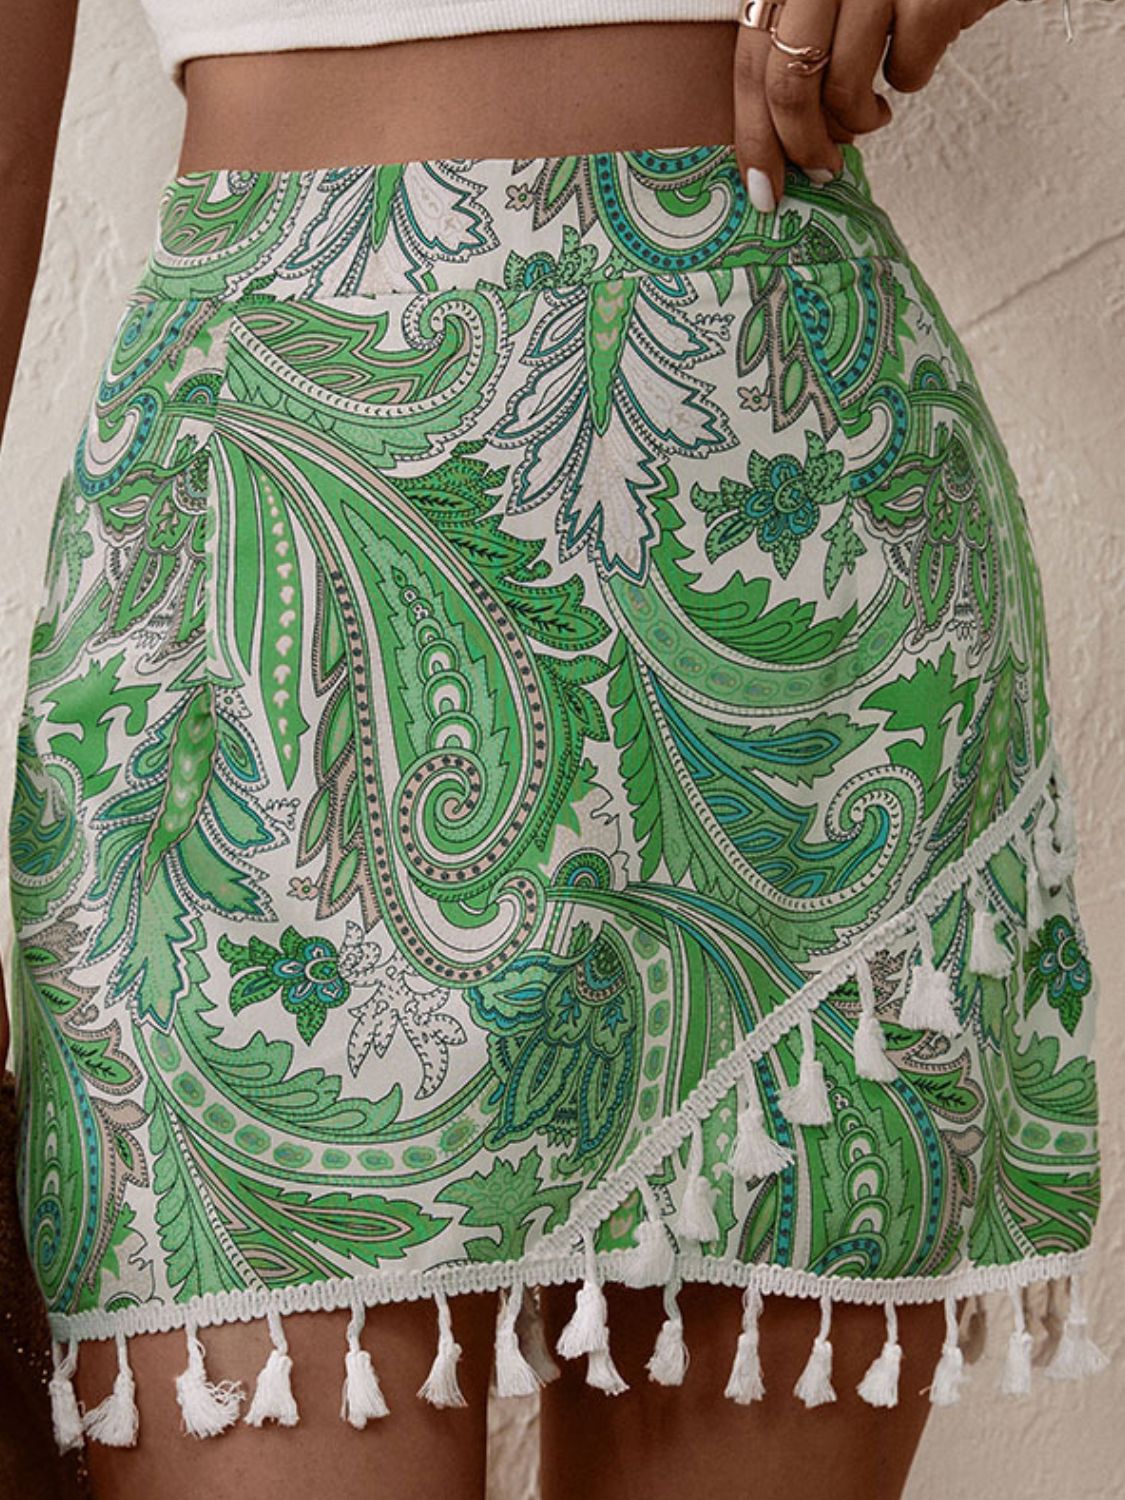 Boho Green Paisley Printed Tassel Hem Shorts - Skort